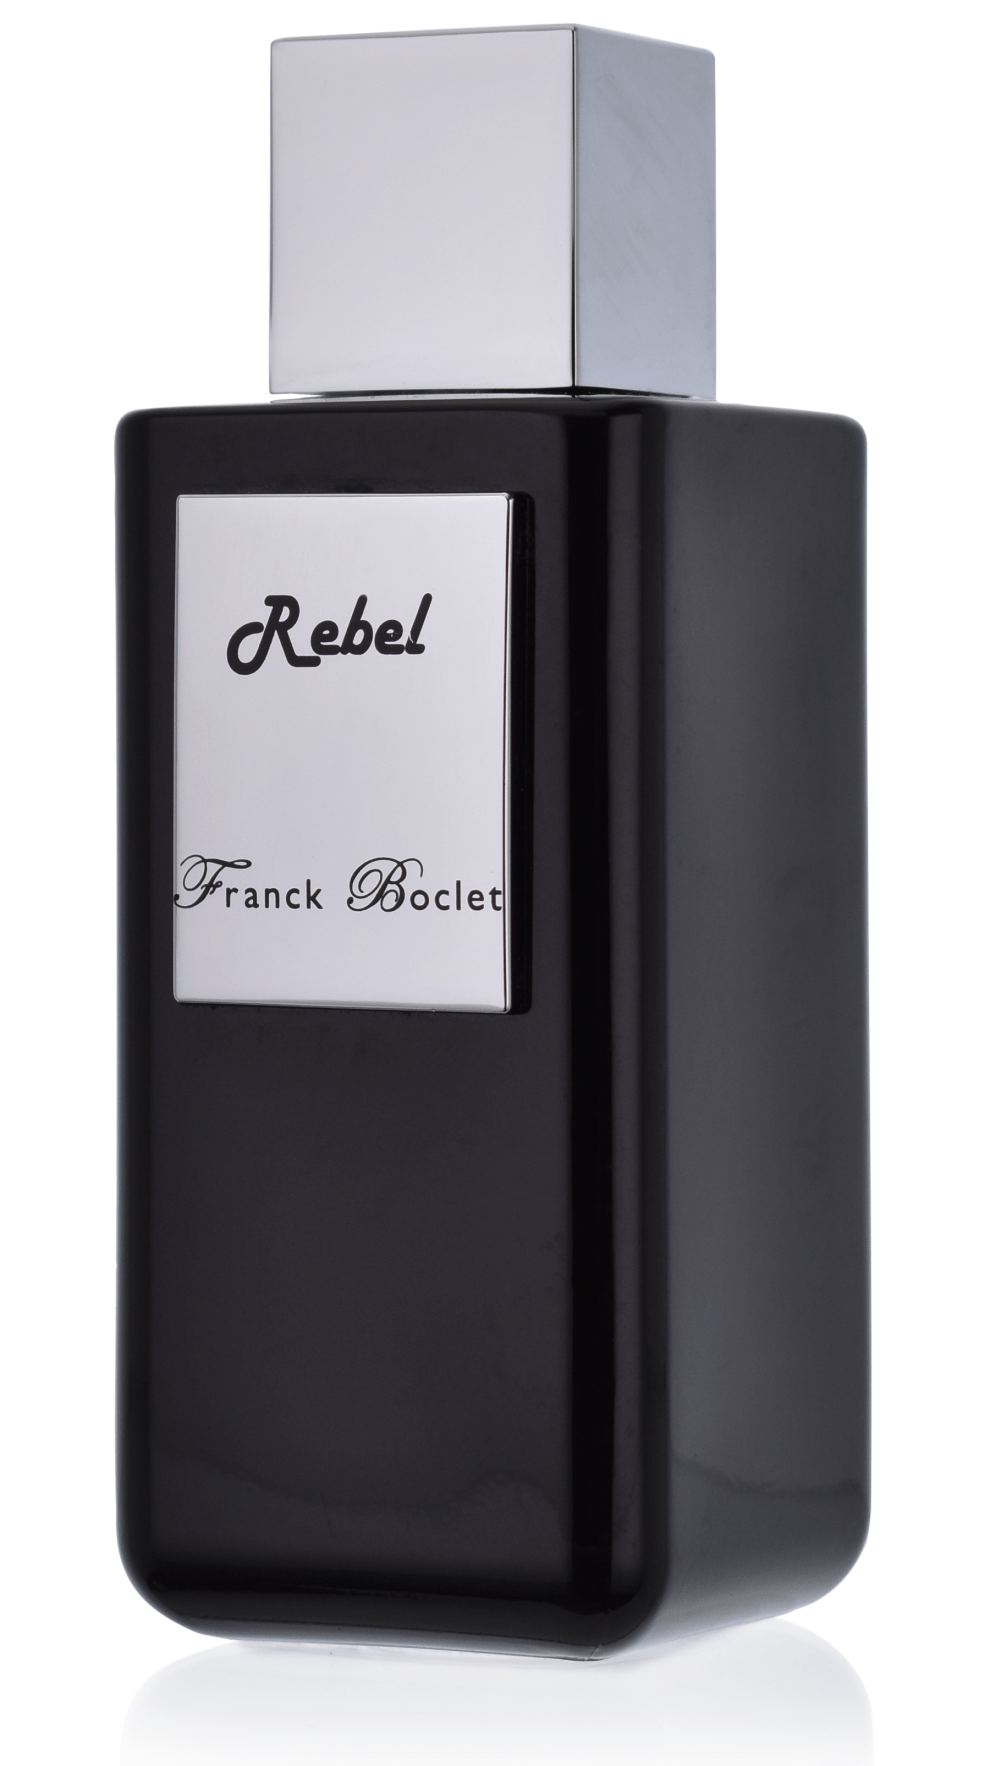 Franck Boclet Rebel 5 ml Extrait de Parfum Abfüllung  